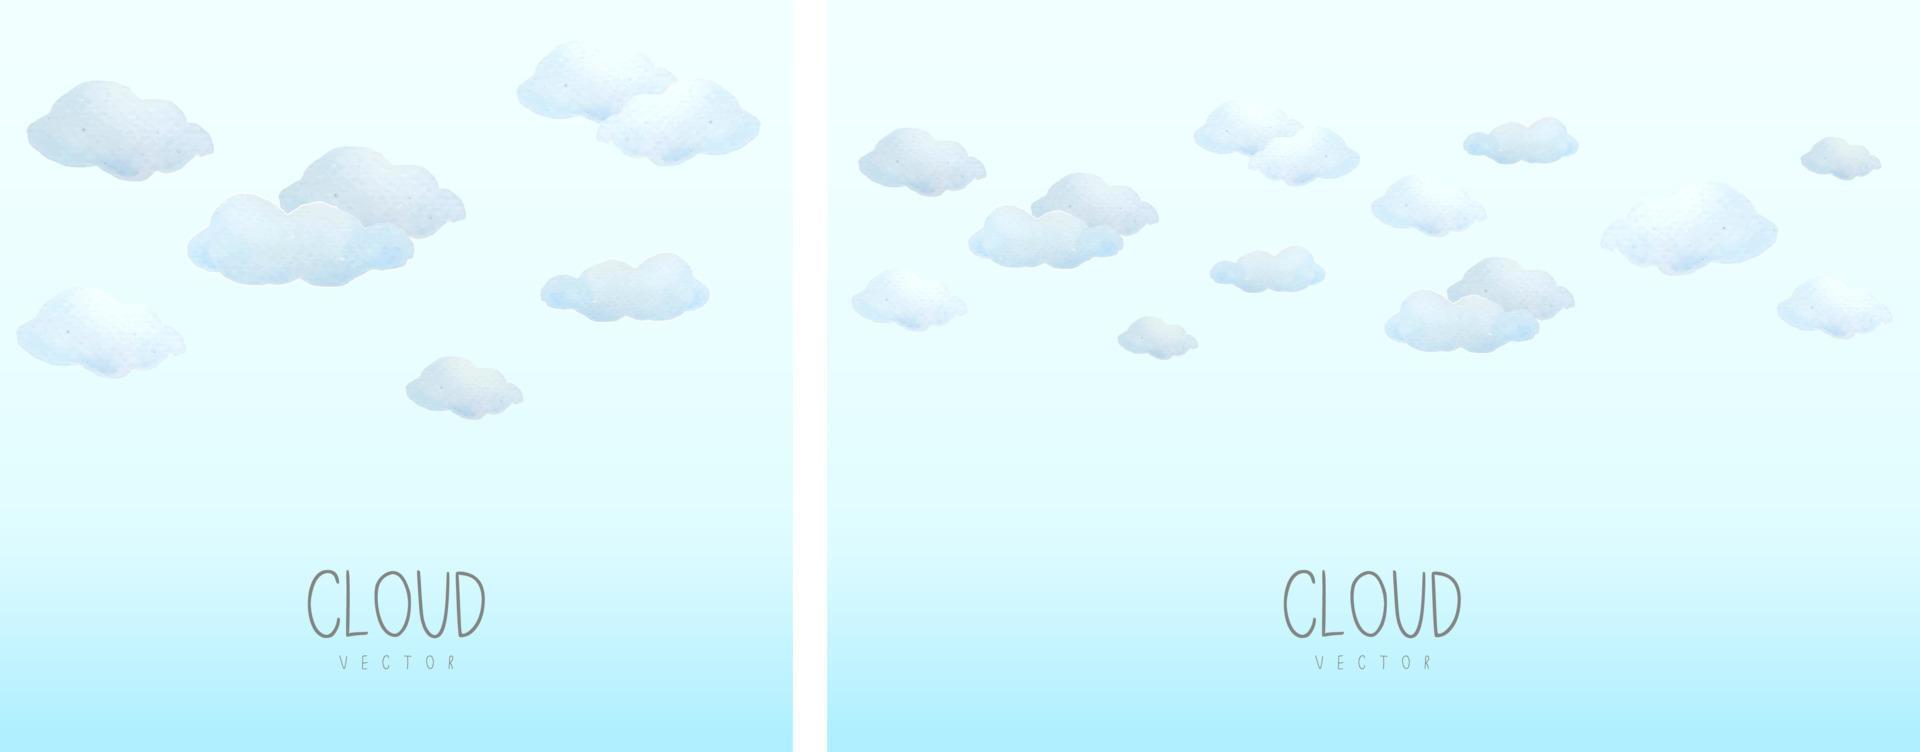 molnet är målat med akvarell på blå gradientbakgrund. molnet är tecknat och ser sött ut. vektor